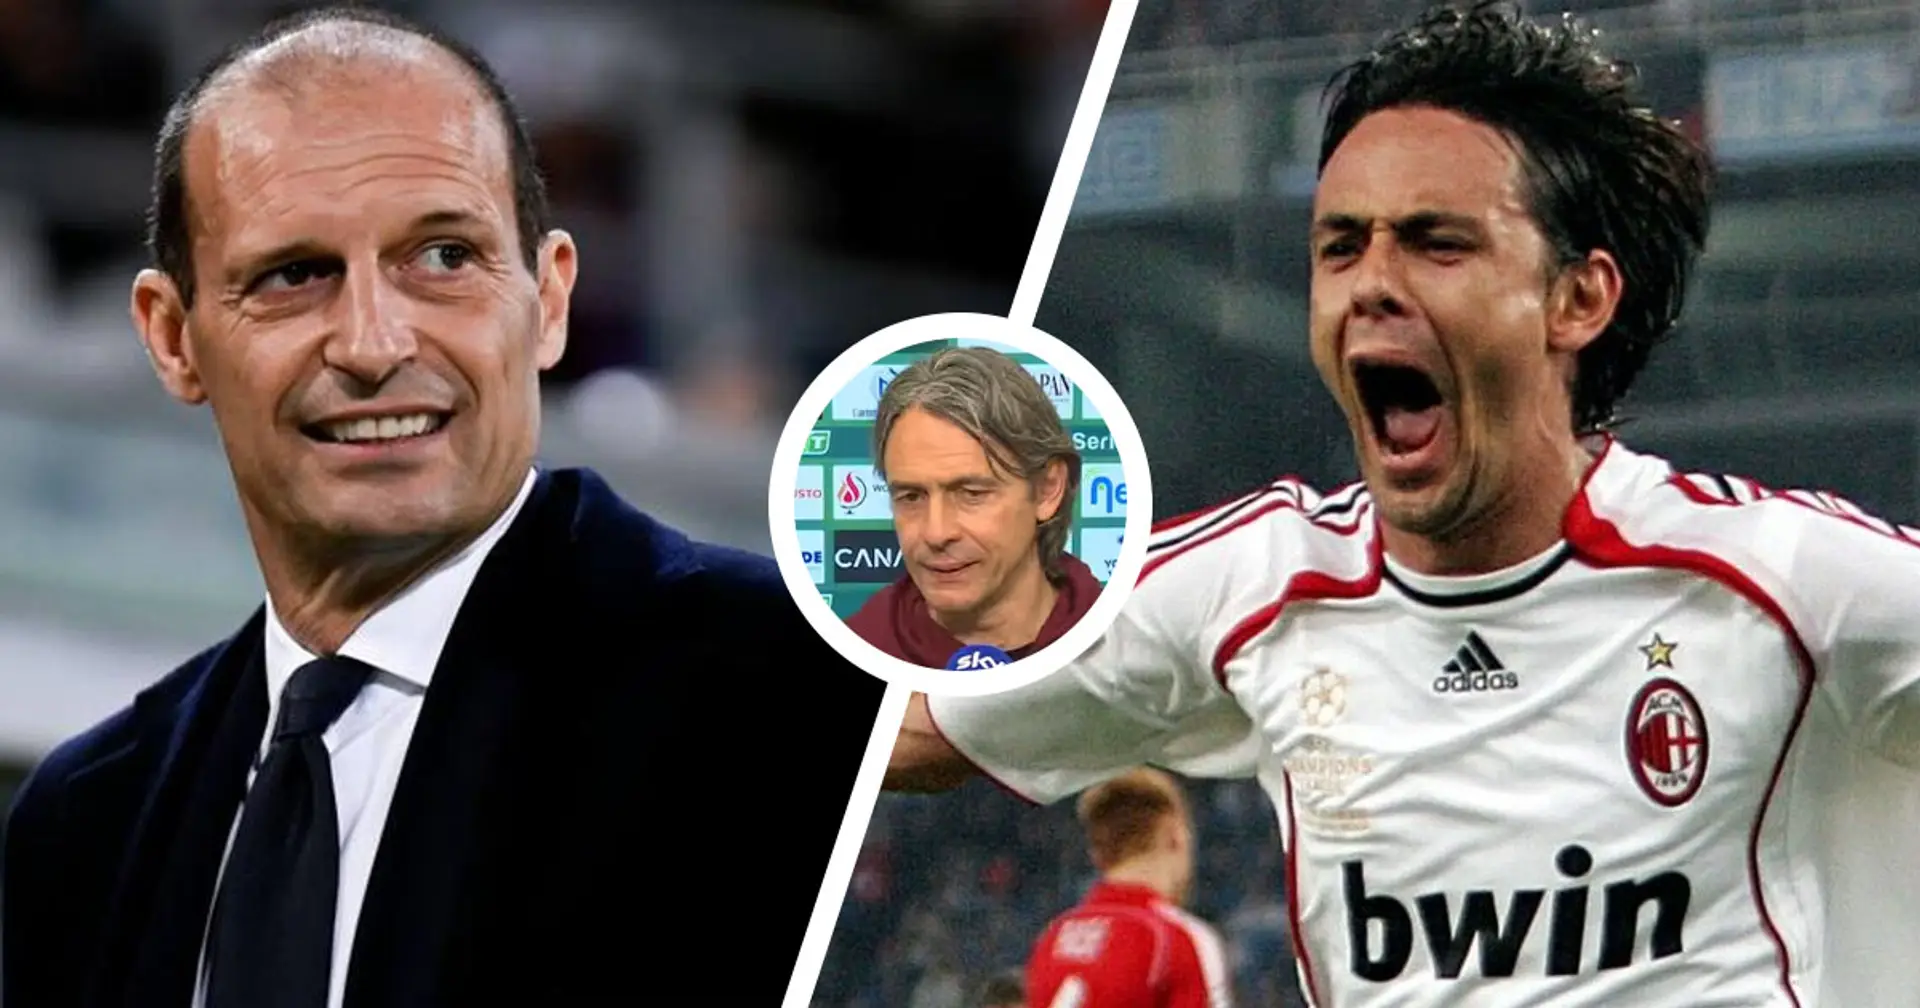 "È colpa sua", Pippo Inzaghi svela chi è stato il responsabile del suo addio al Milan e al calcio giocato